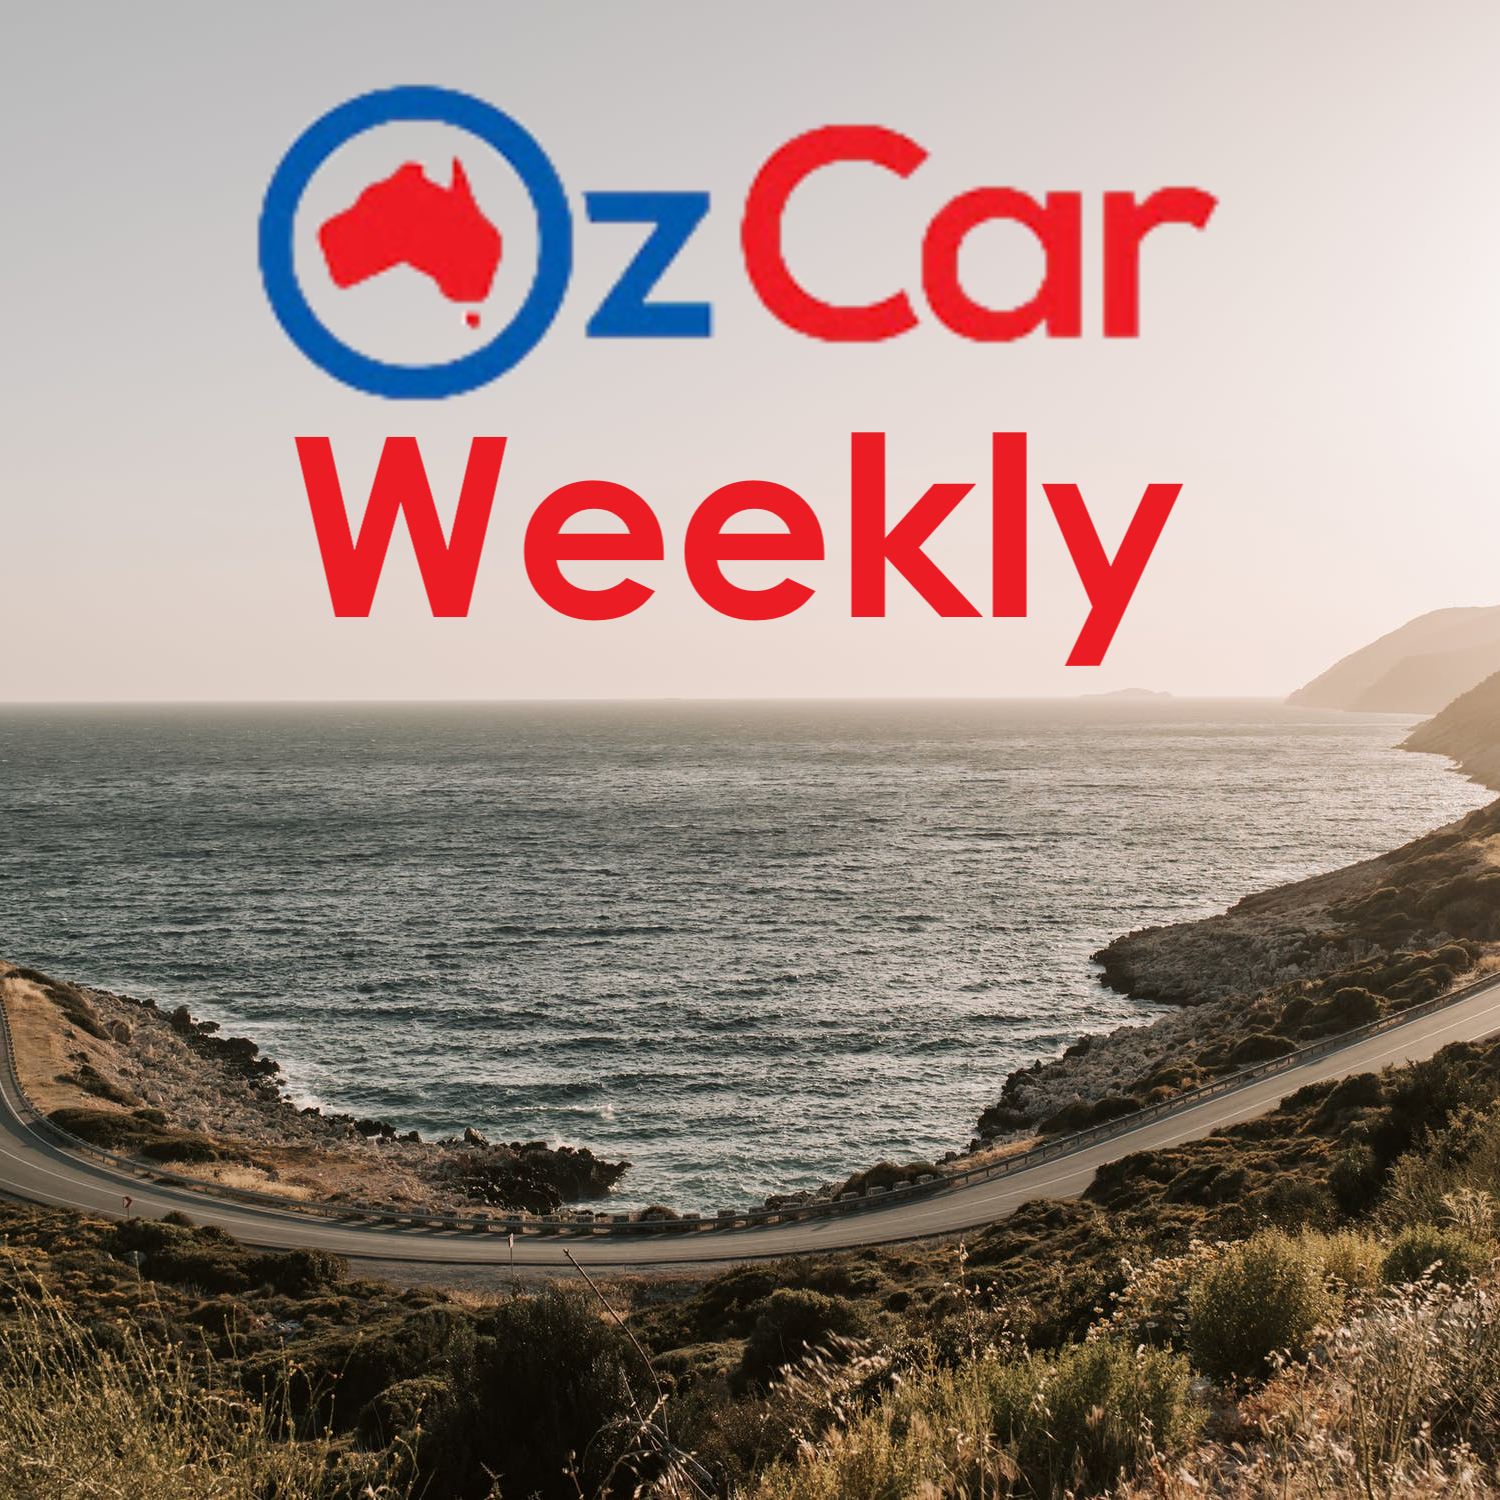 OzCar Weekly Episode 29